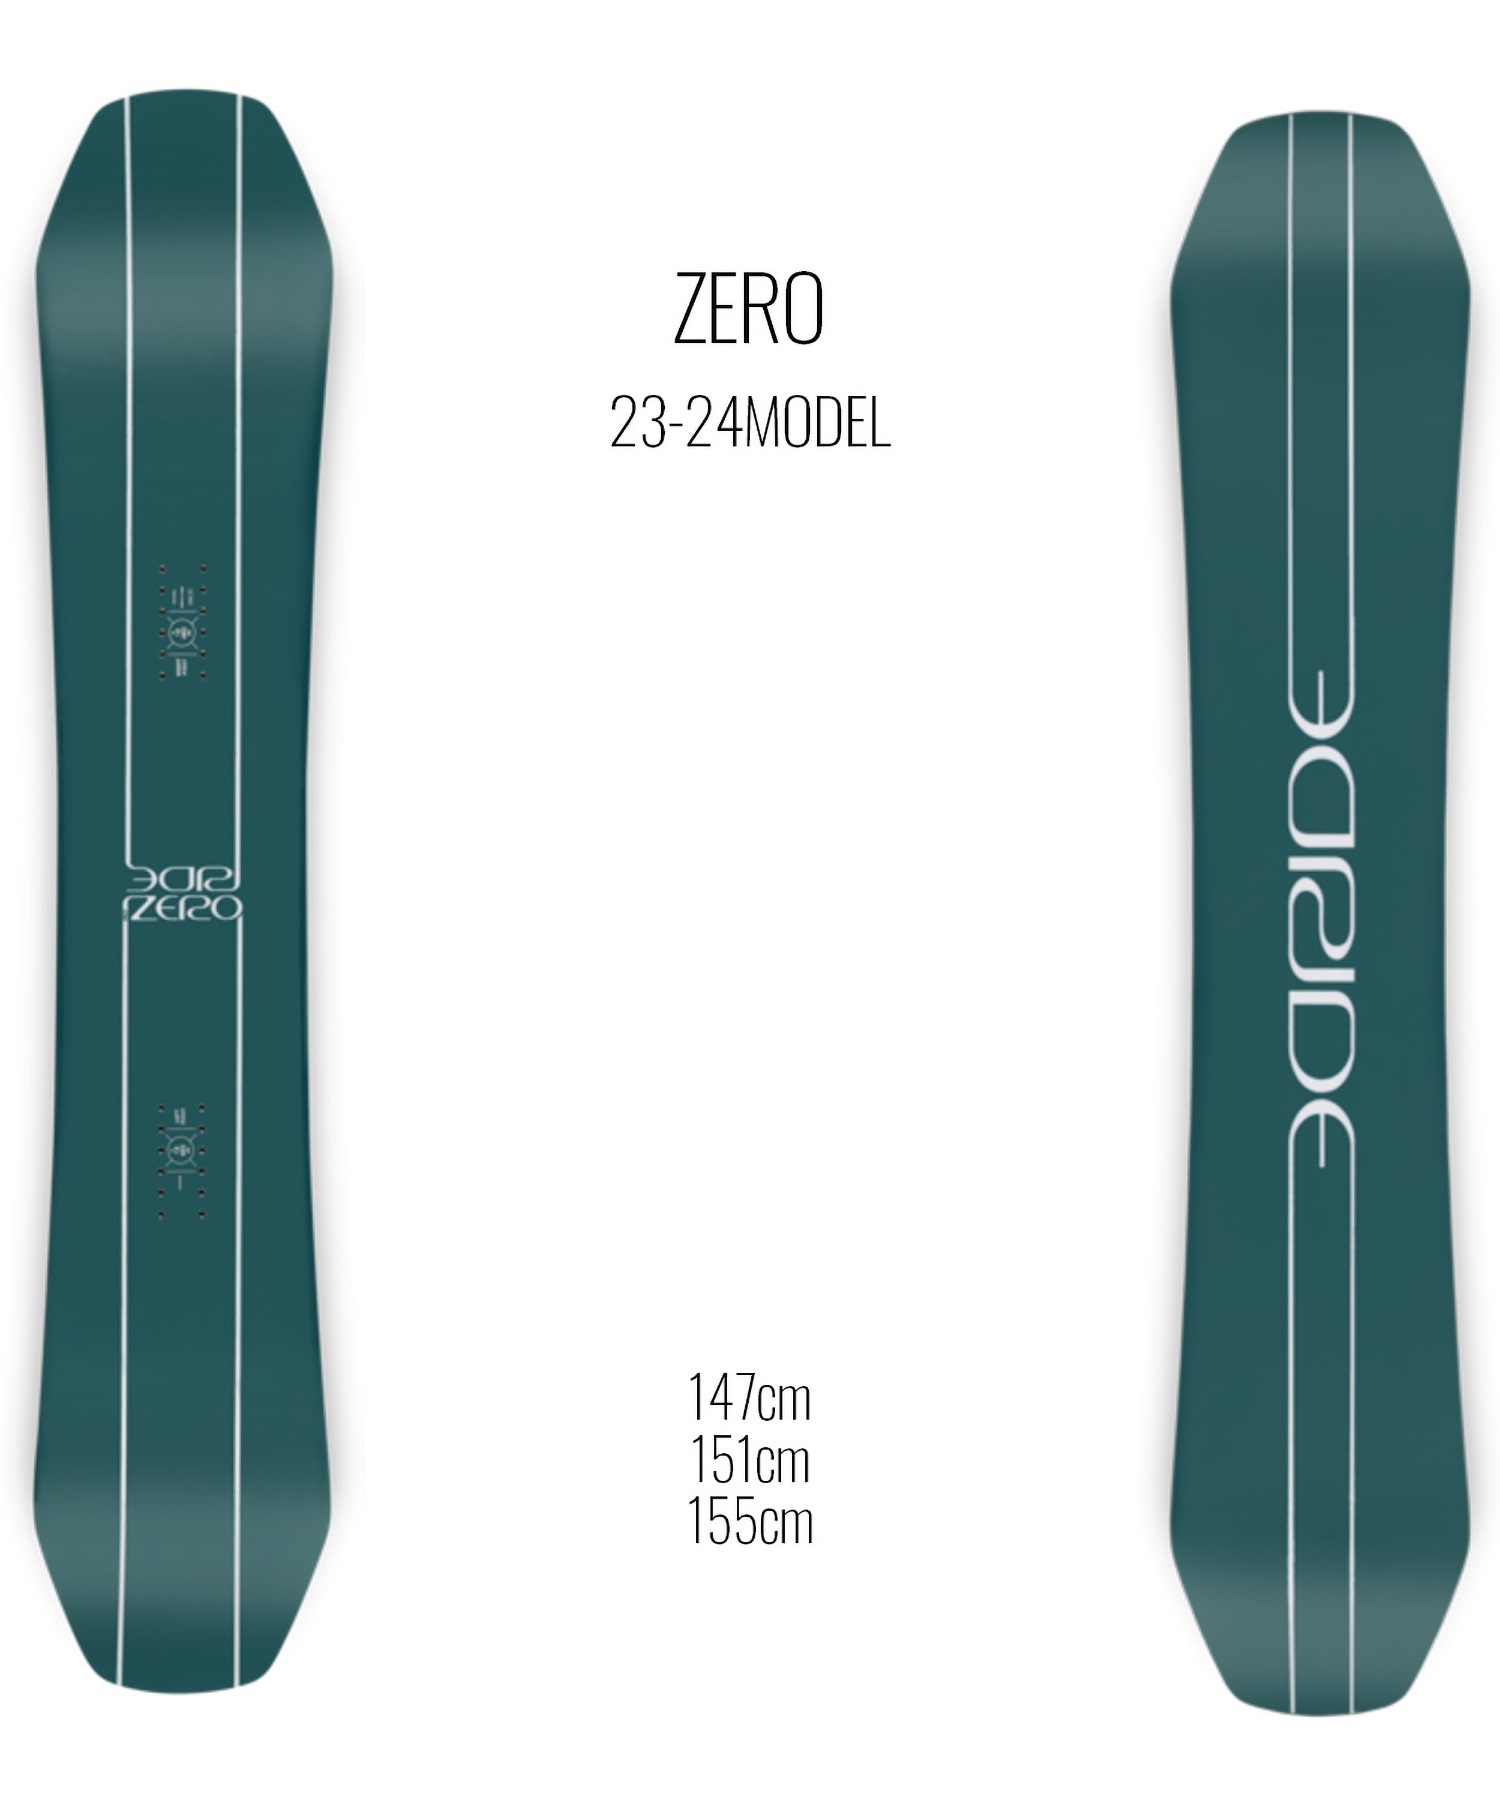 スノーボード 板 メンズ RIDE ライド ZERO 23-24モデル ムラサキスポーツ KK C2(ZERO-147cm)